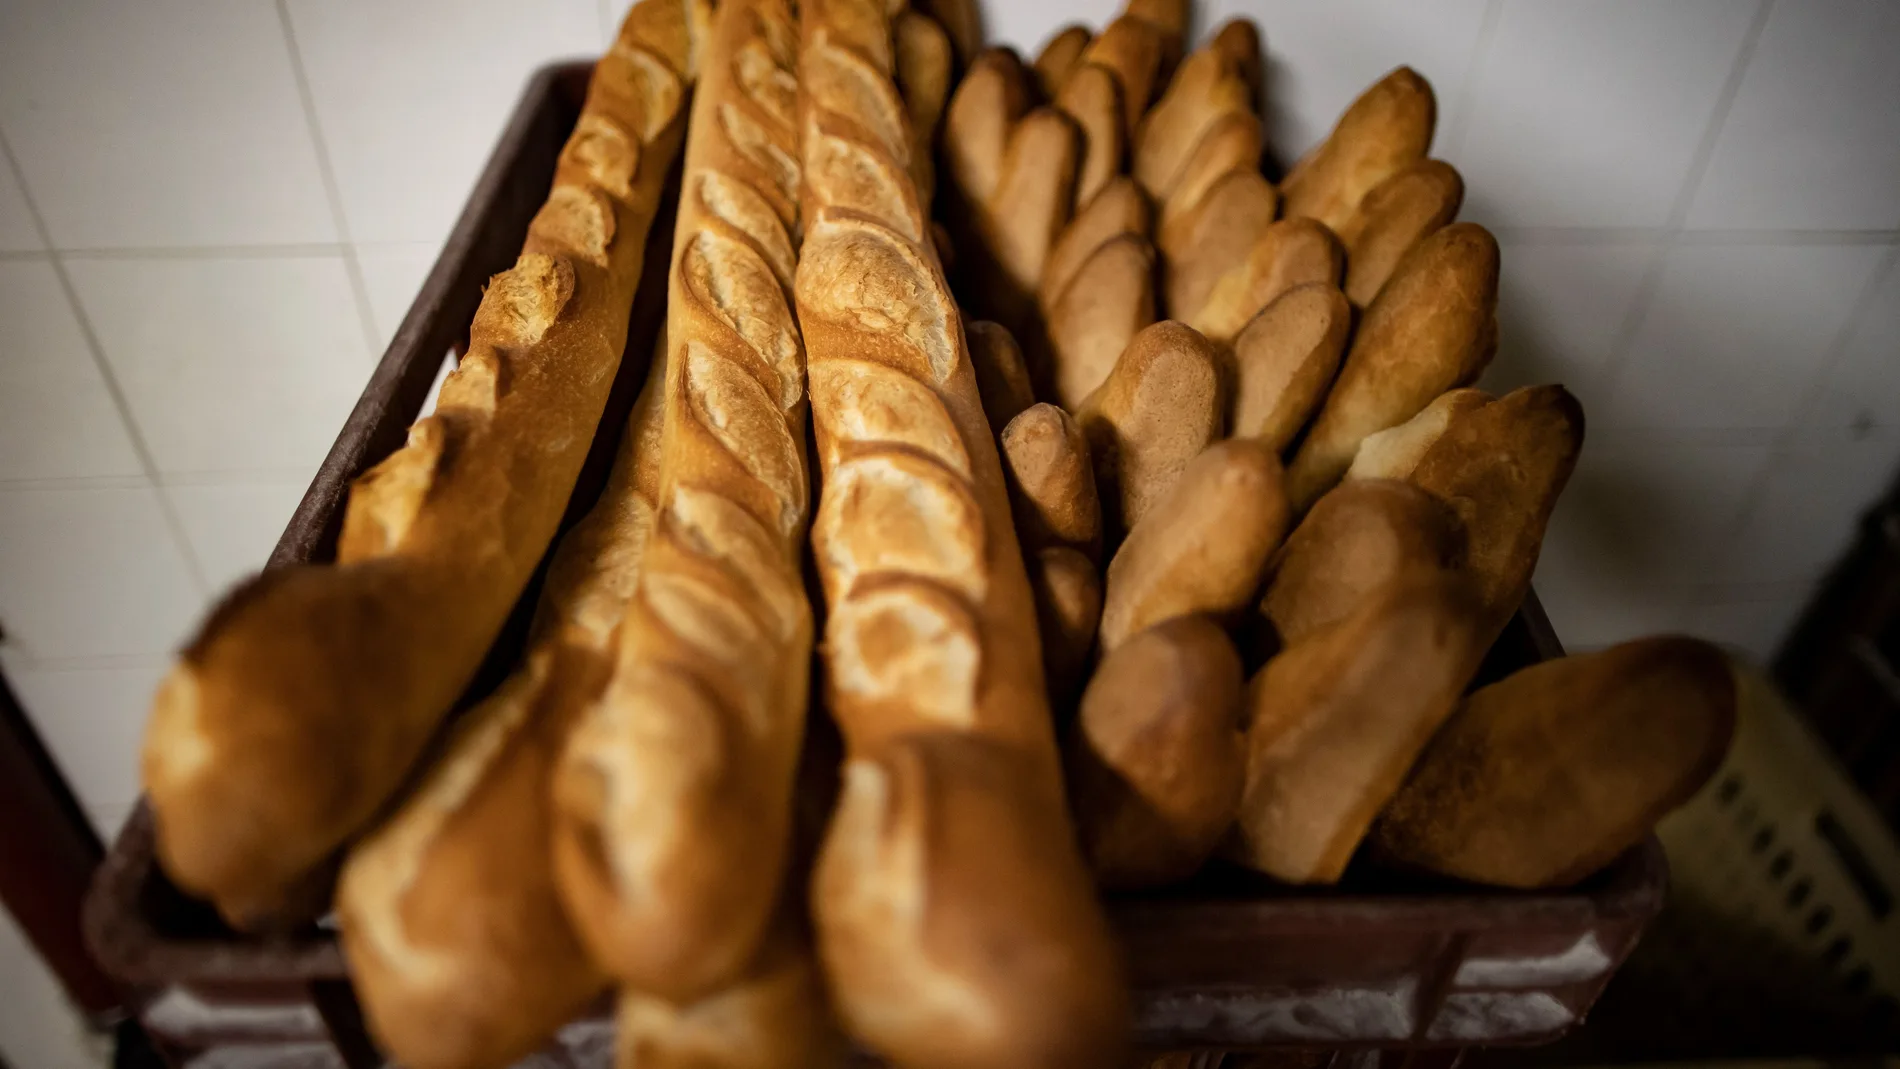 Las panaderías deberán reducir la cantidad de sal en el pan alrededor de un 20 por ciento